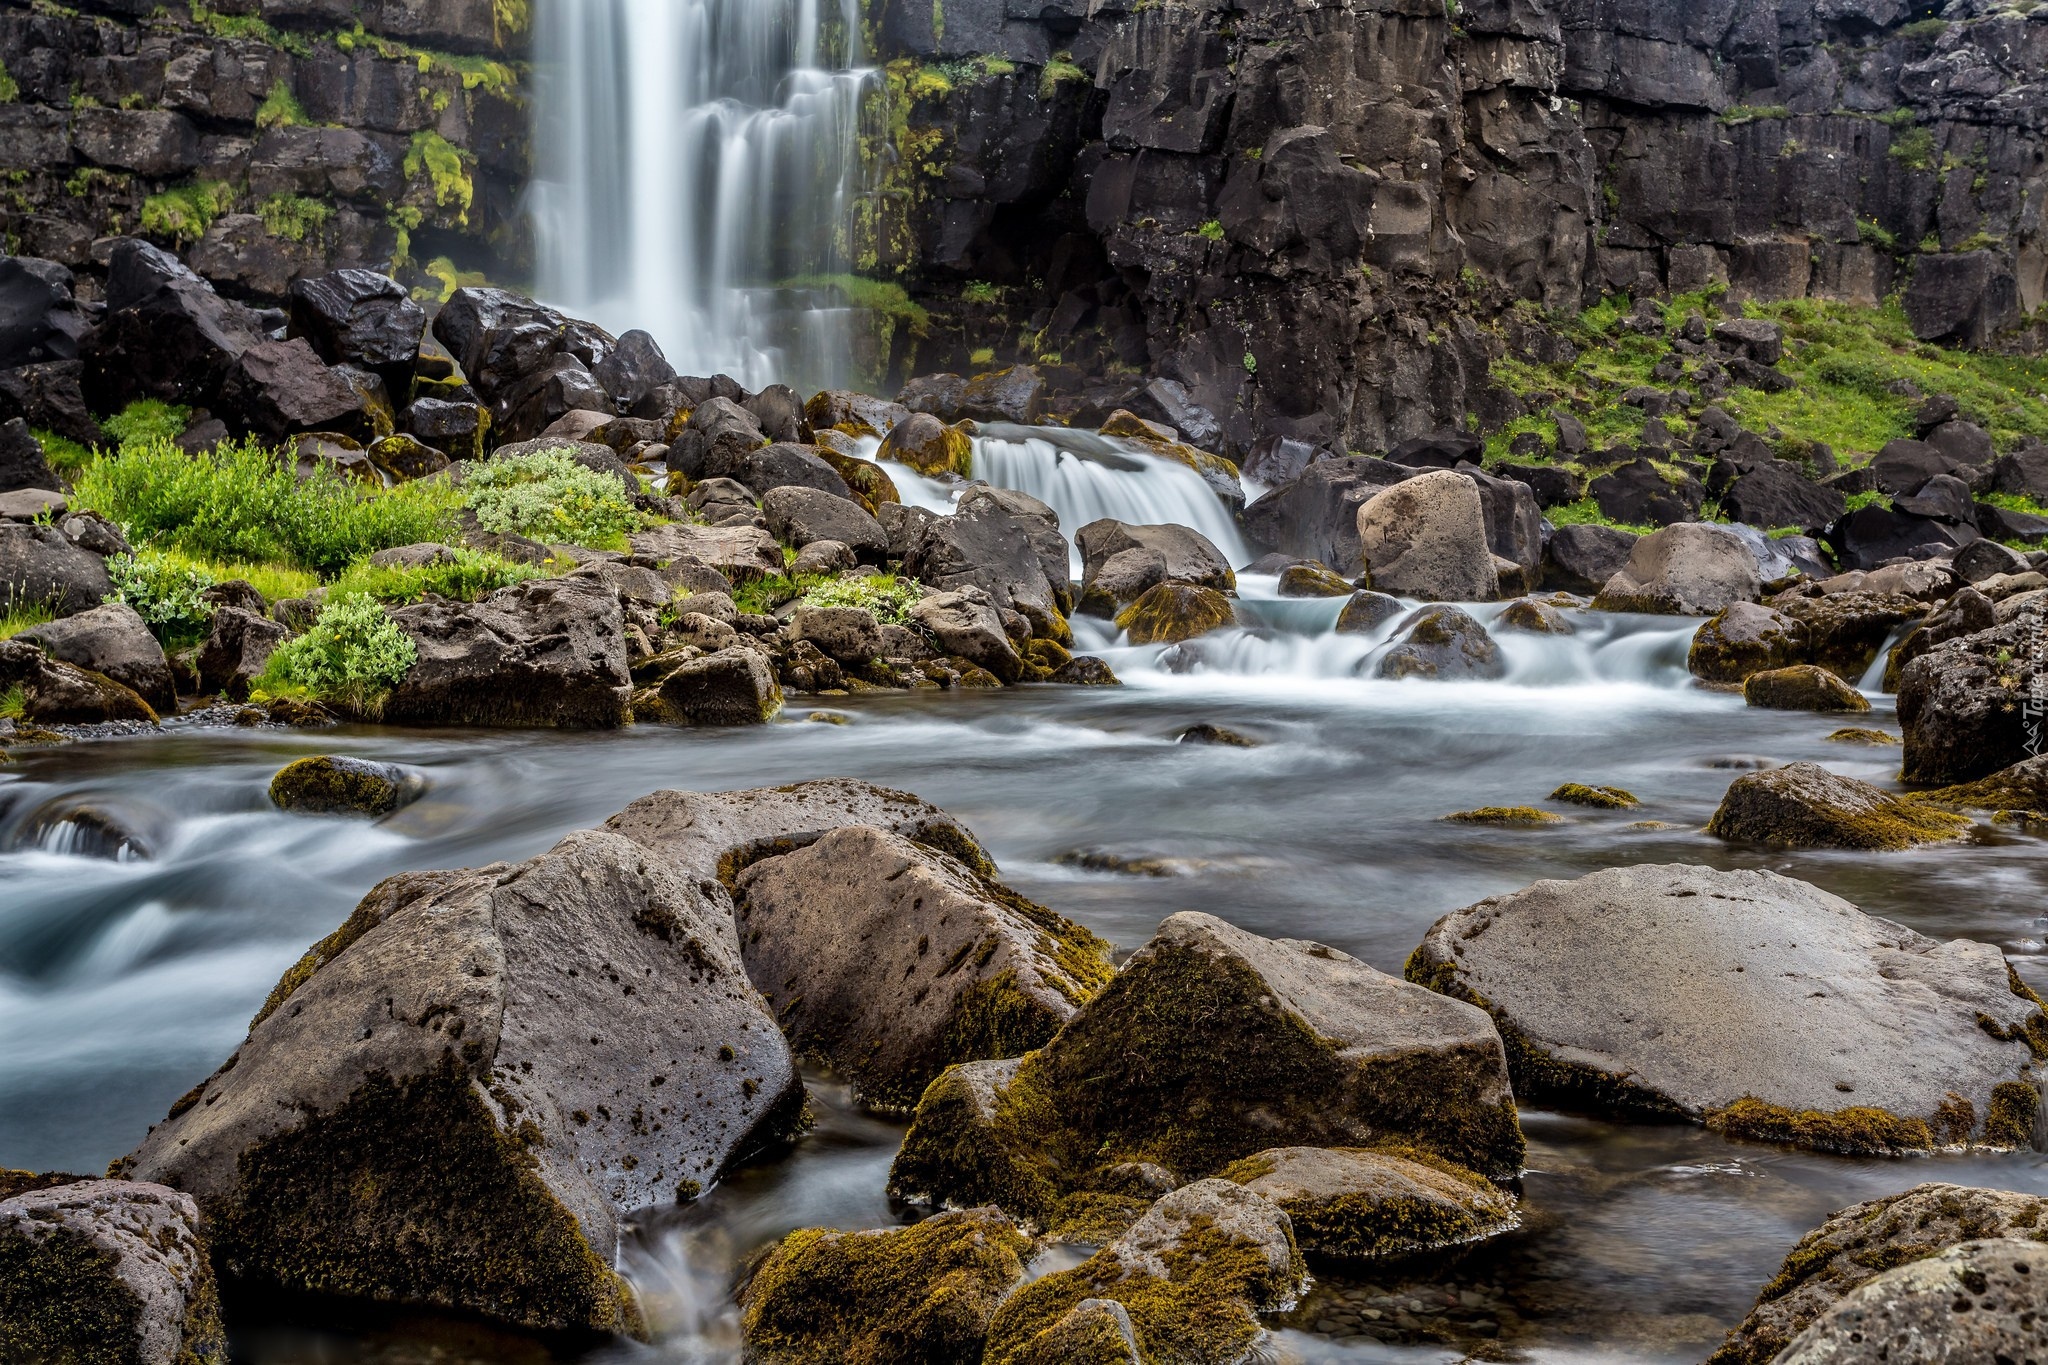 Wodospad Oxararfoss, Park Narodowy Thingvellir, Obszar Þingvellir, Islandia, Rzeka Oxara, Skały, Kamienie, Rośliny